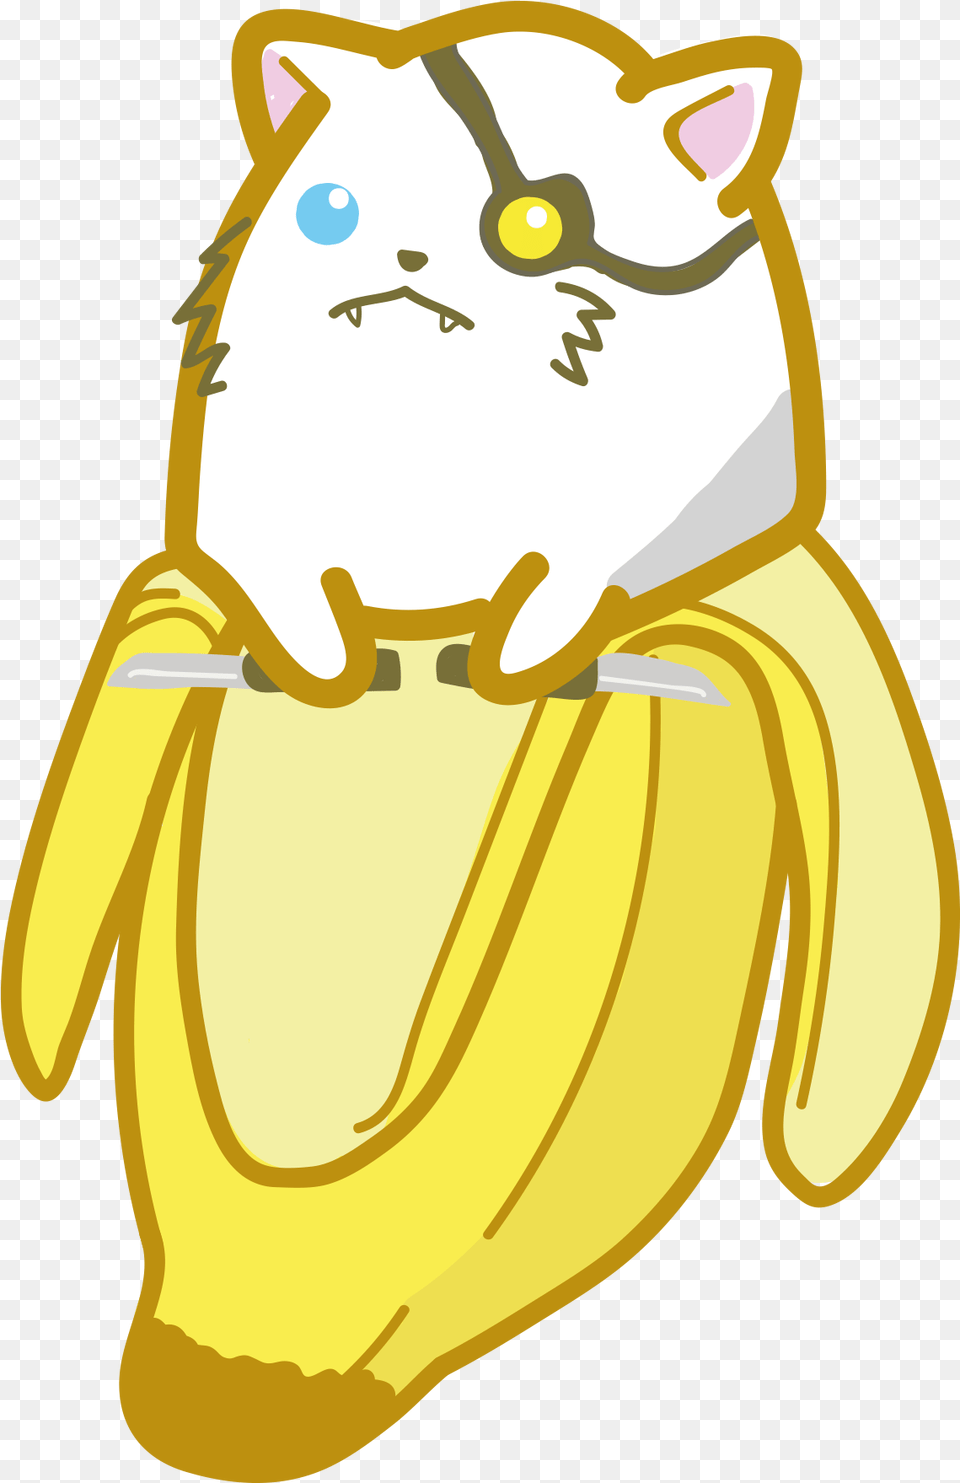 Rengnya Rengar From League Of Legends As A Bananya Cartoon, Banana, Food, Fruit, Plant Free Transparent Png